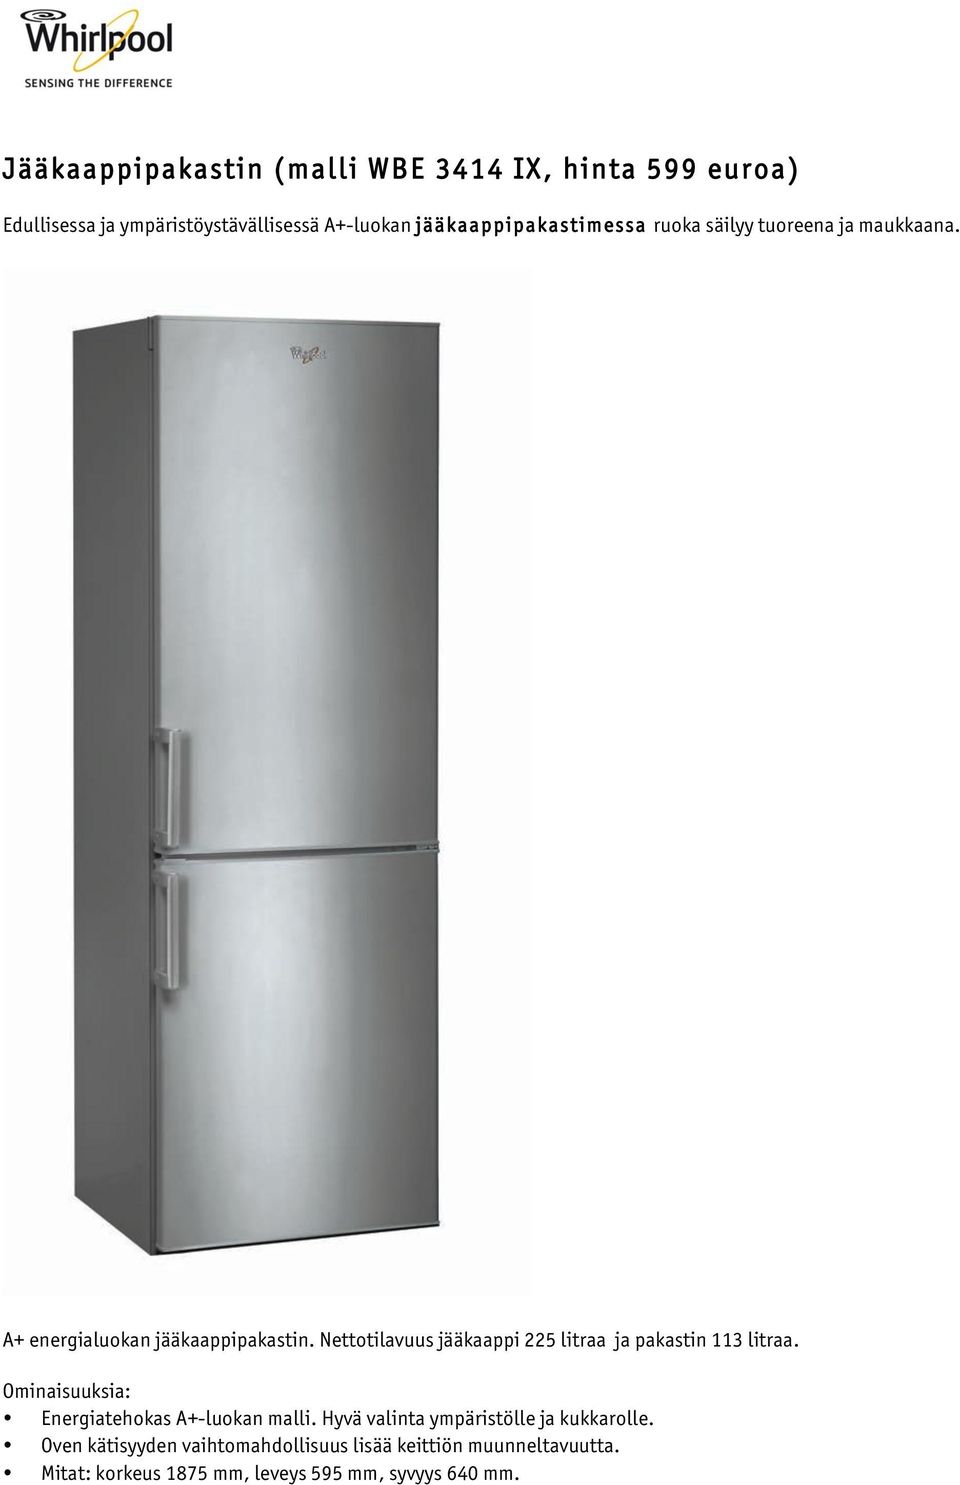 Nettotilavuus jääkaappi 225 litraa ja pakastin 113 litraa. Energiatehokas A+-luokan malli.